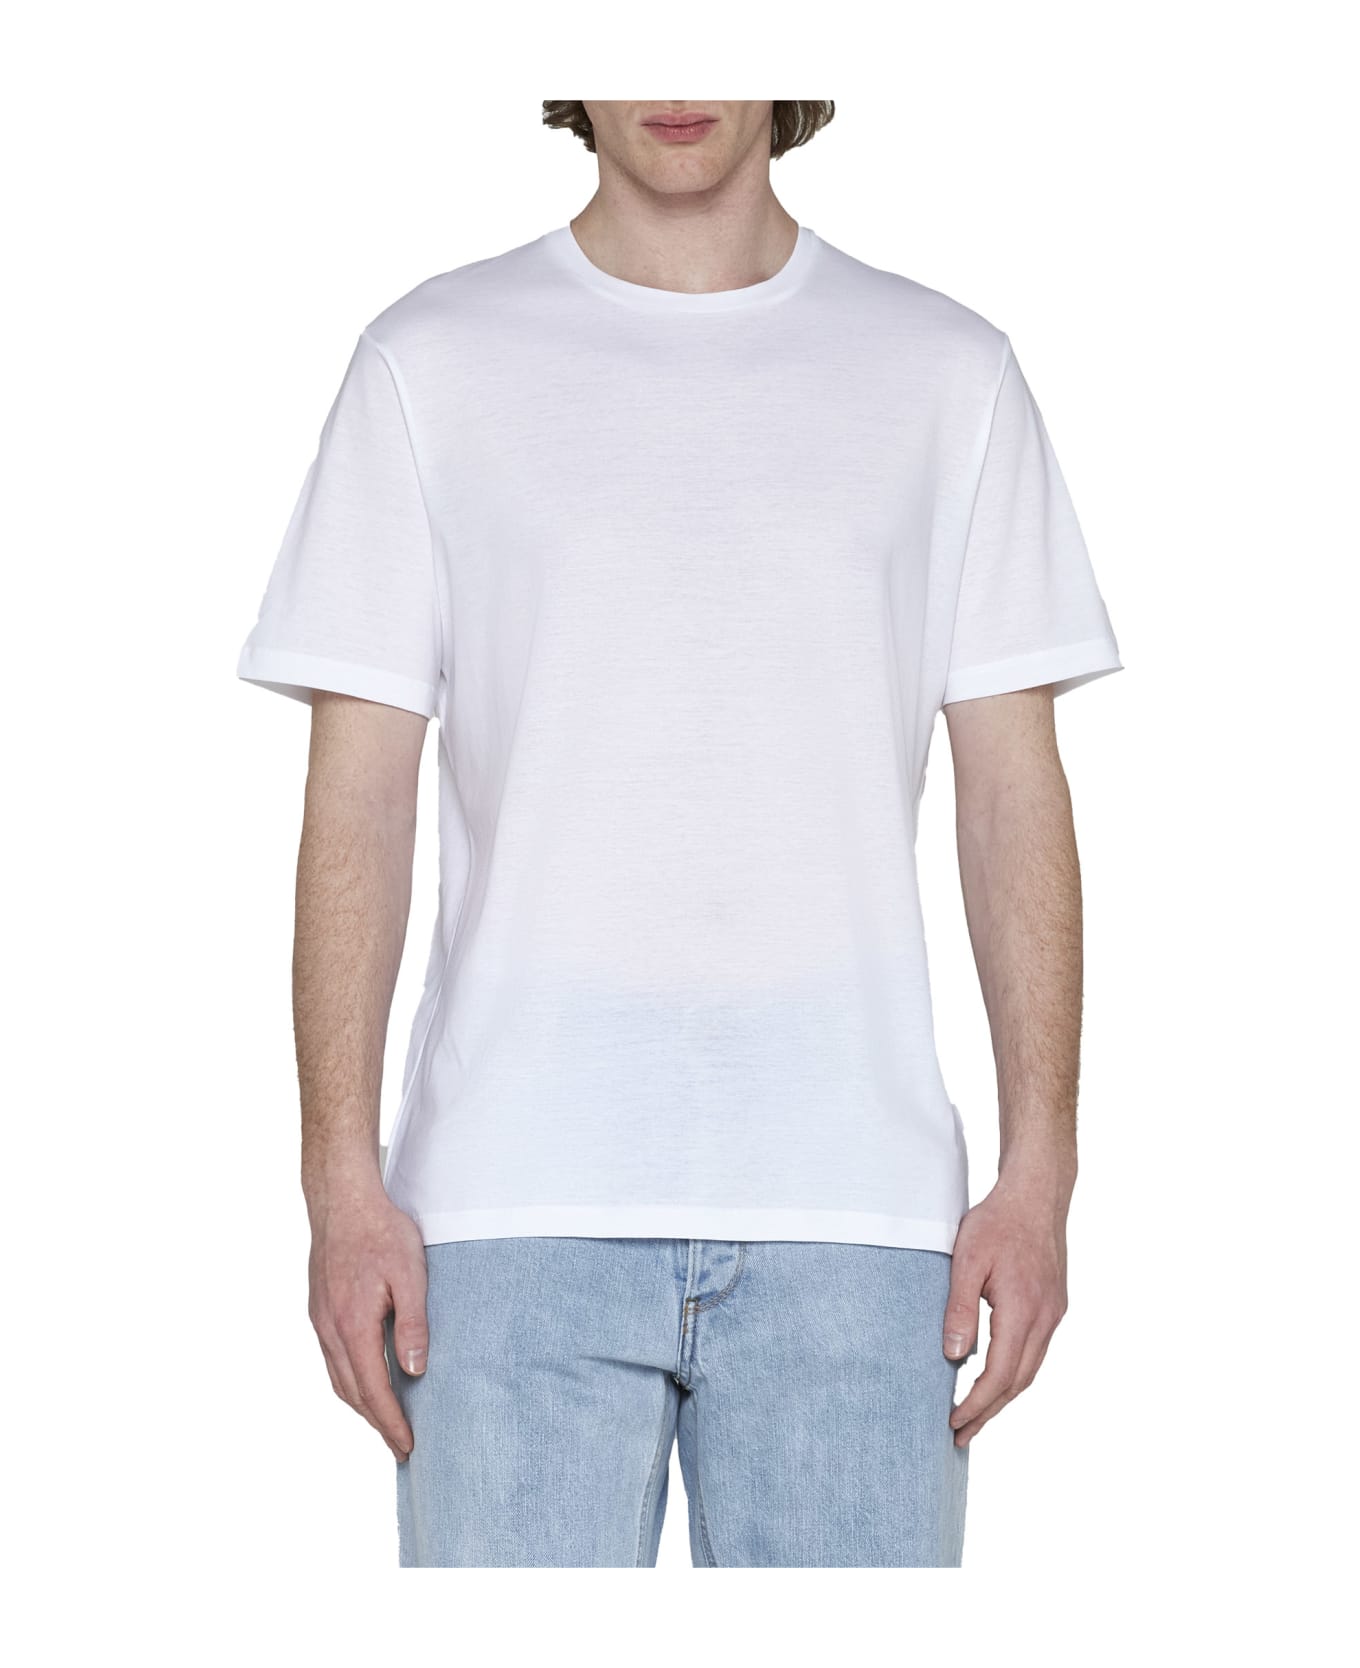 Herno T-Shirt - White